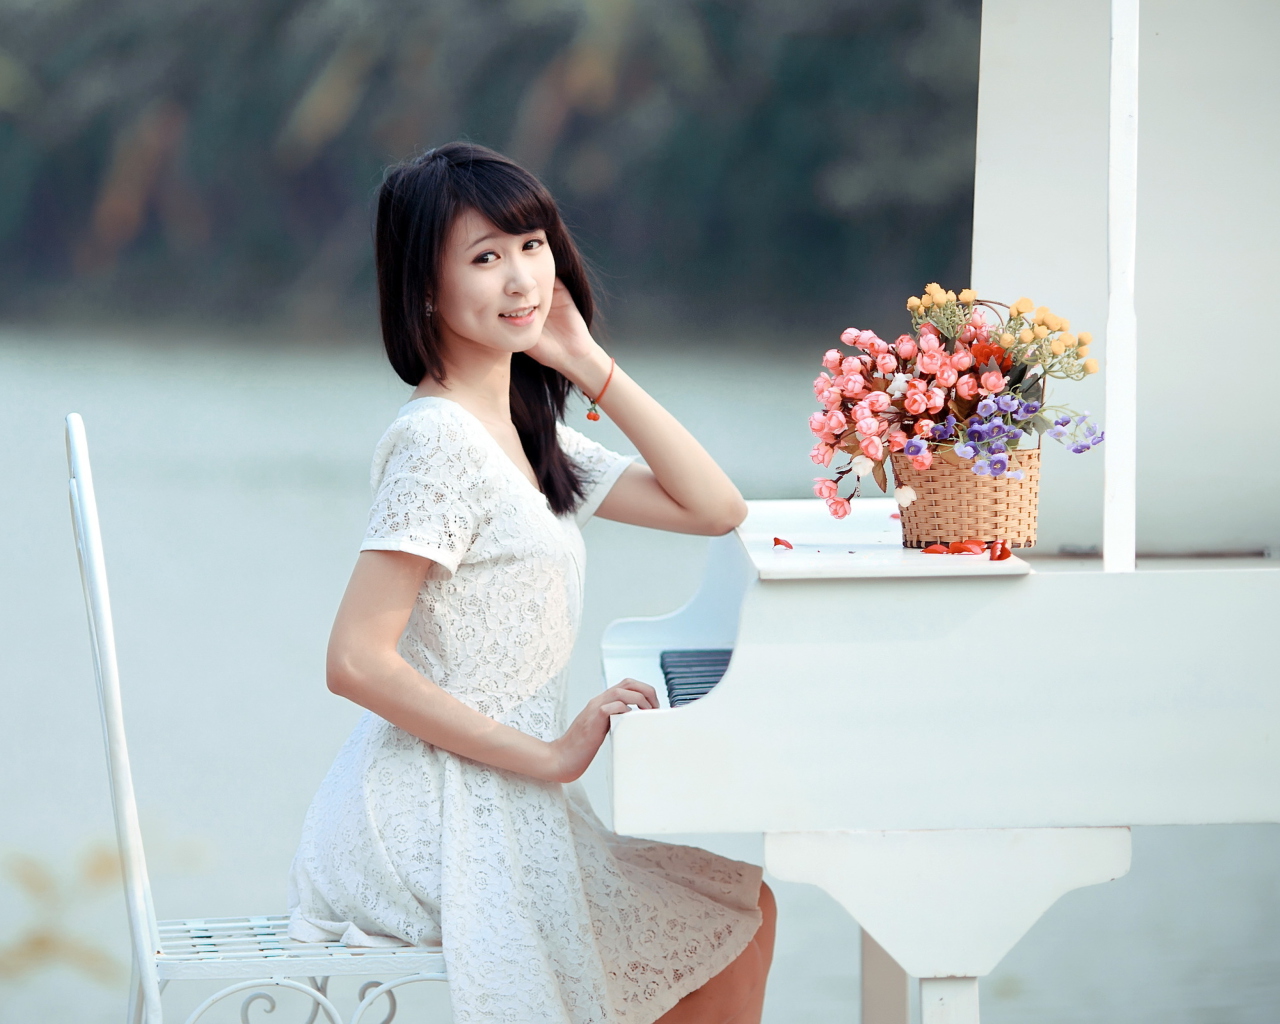 Das Young Asian Girl By Piano Wallpaper 1280x1024